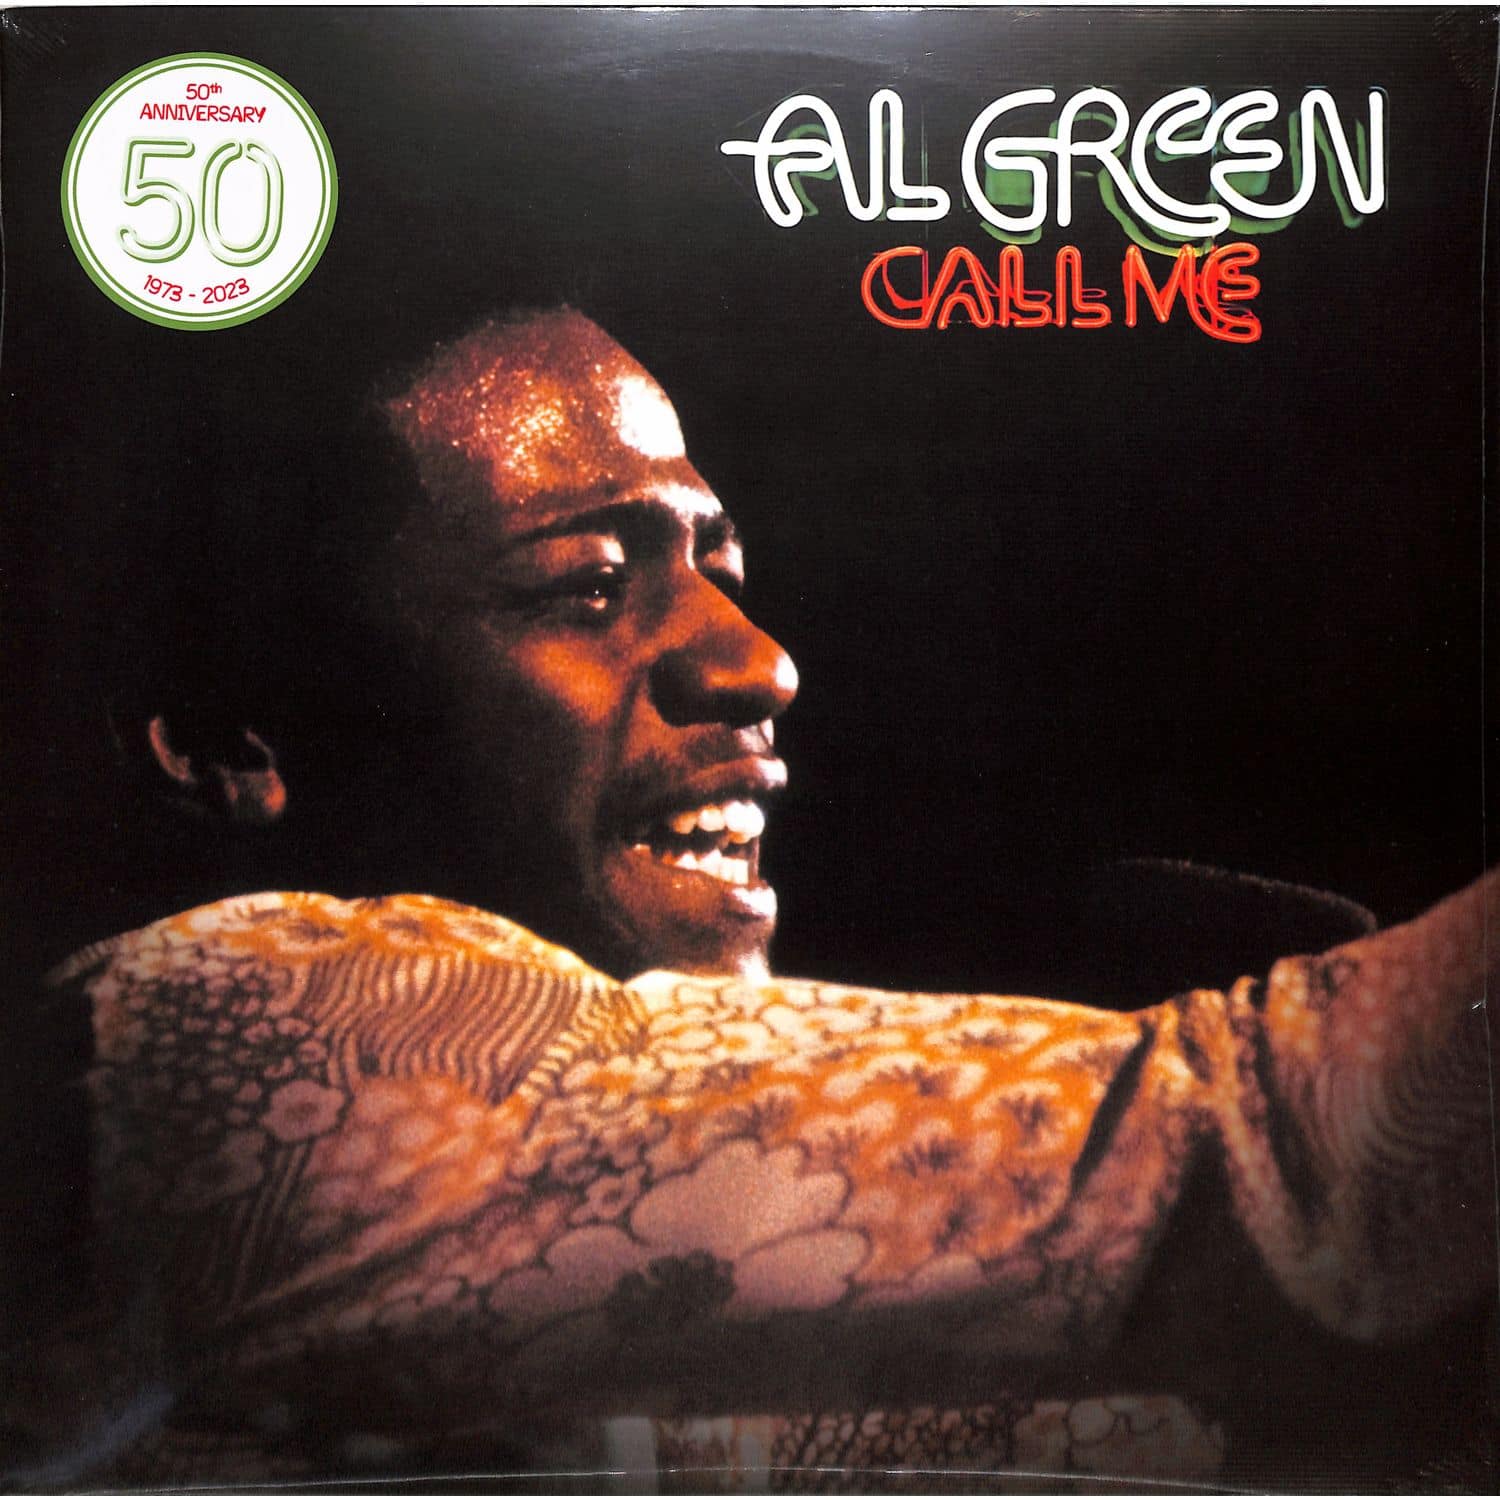  Al Green - CALL ME 